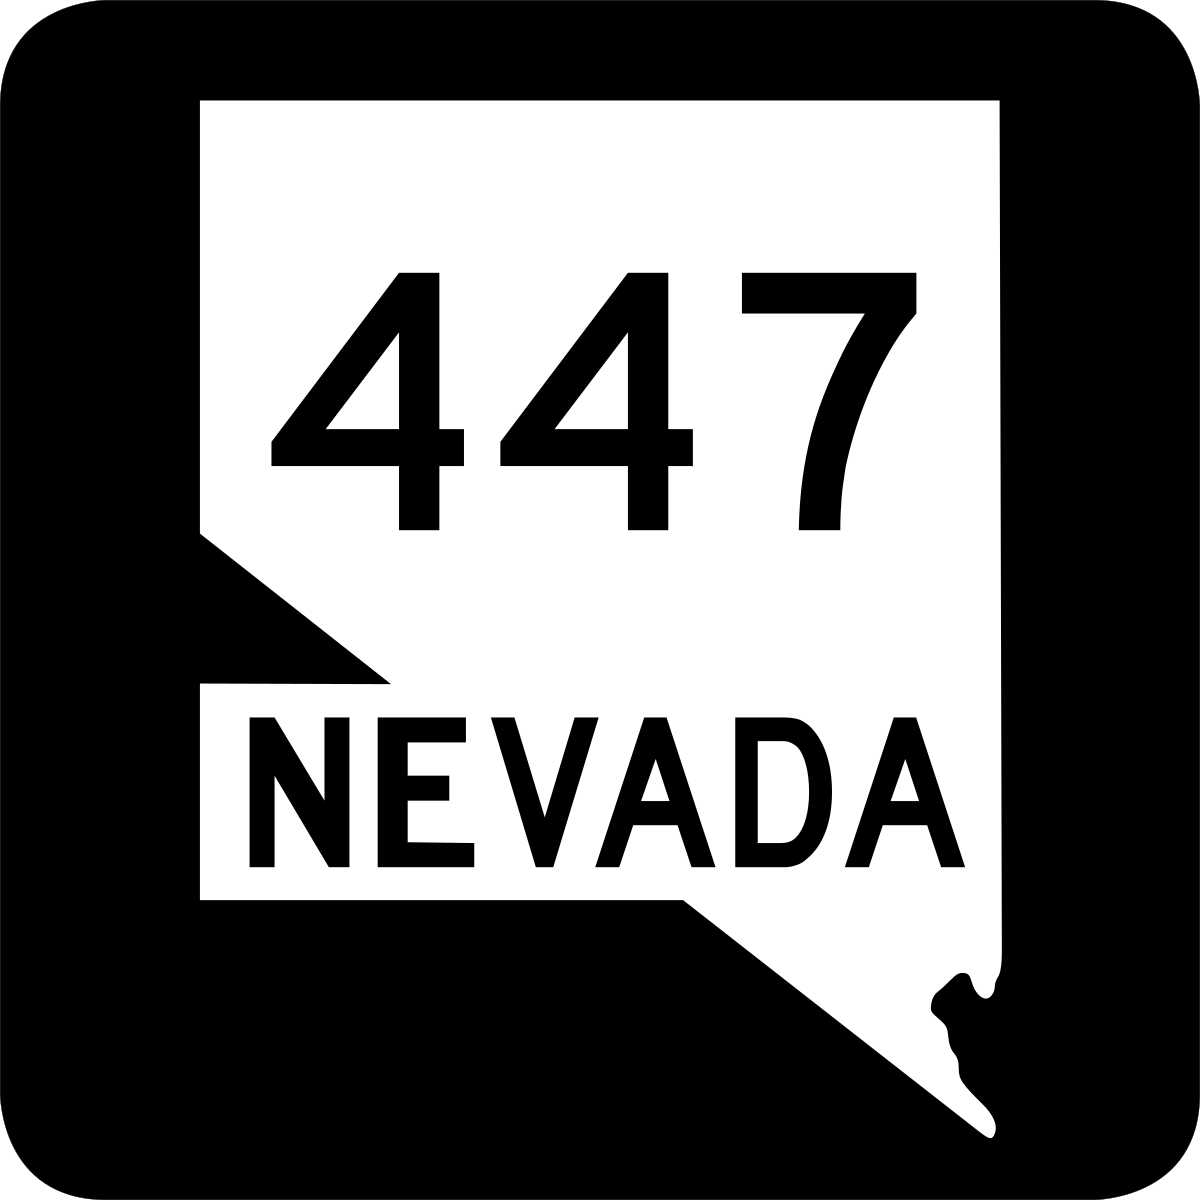 Nevada State Route 447 - Wikipedia